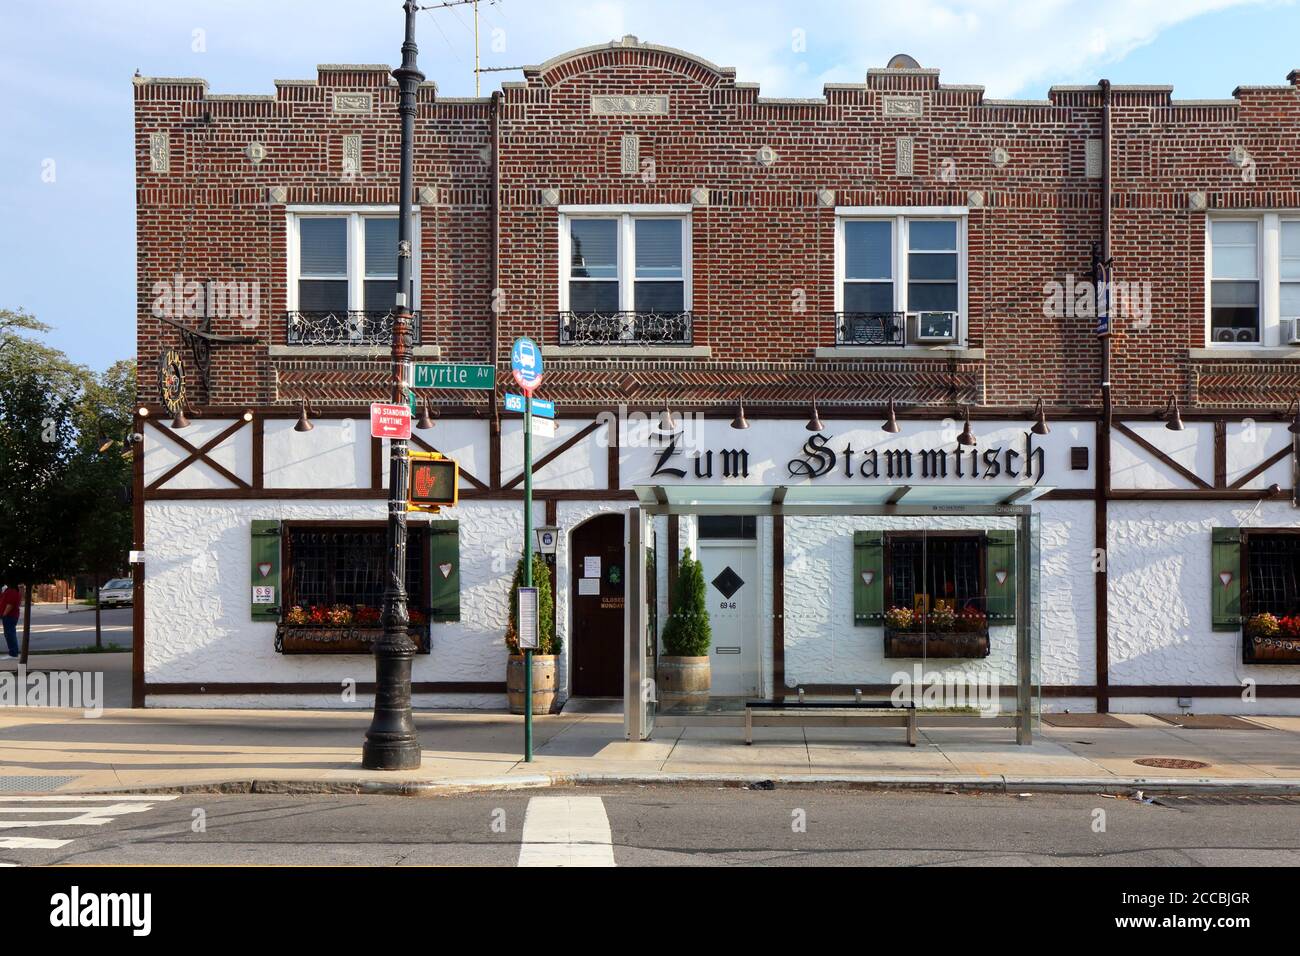 Zum Stammtisch, 69-46 Myrtle Ave, Queens, NY. Façade extérieure d'un restaurant de style bavarois allemand dans le quartier Glendale. Banque D'Images